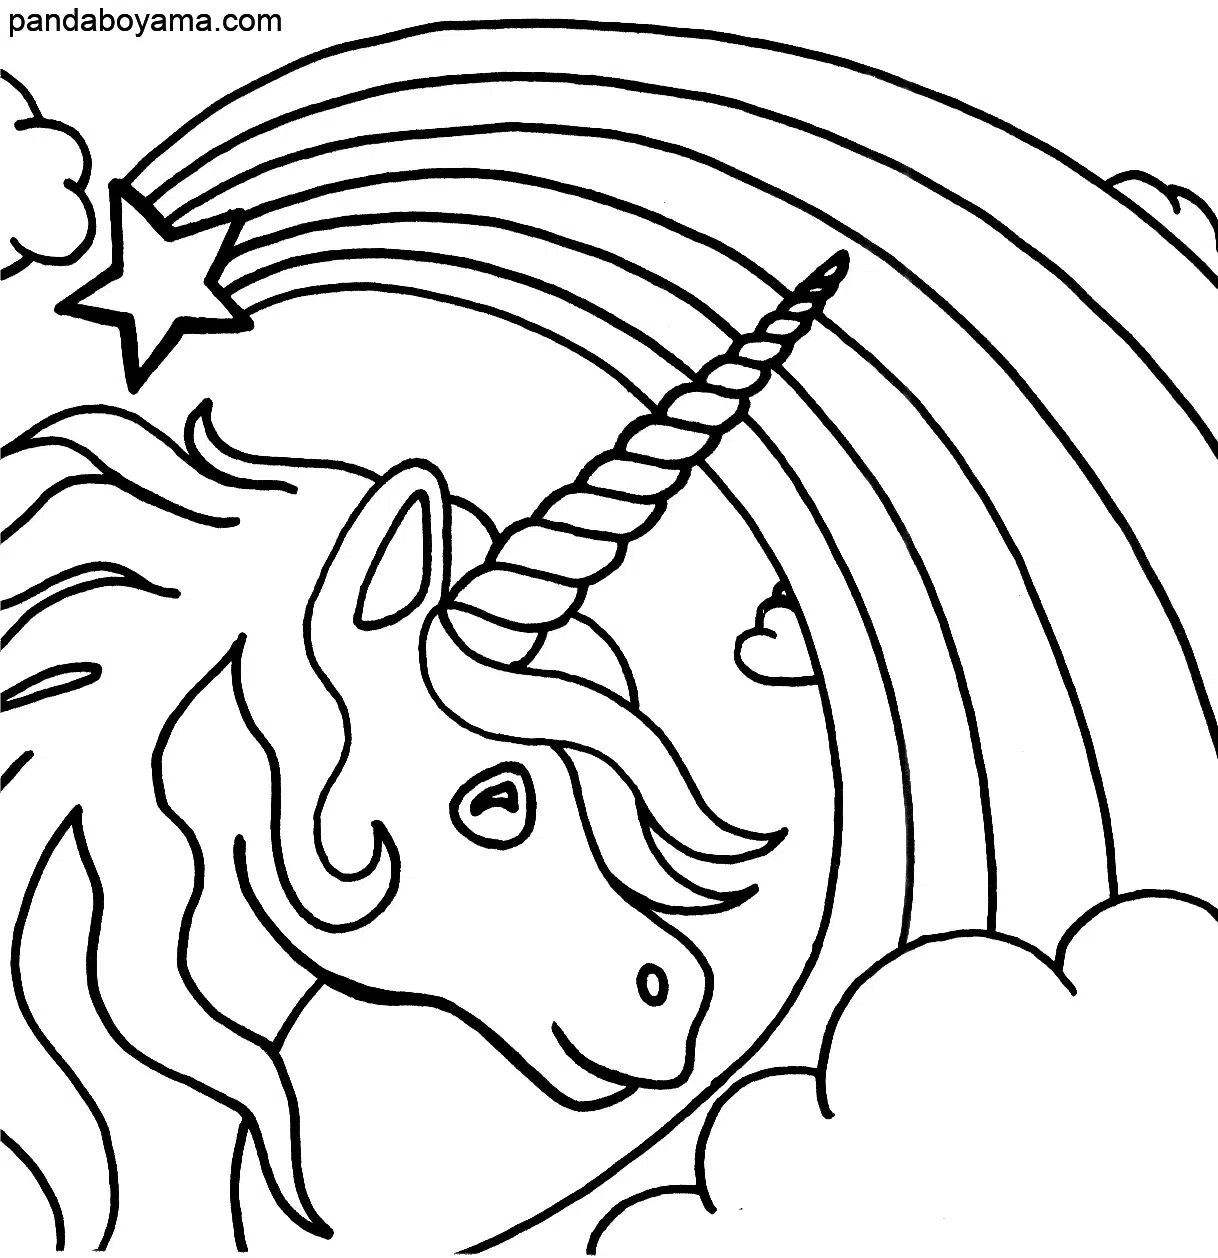 Gökkuşağı ve Unicorn boyama sayfası